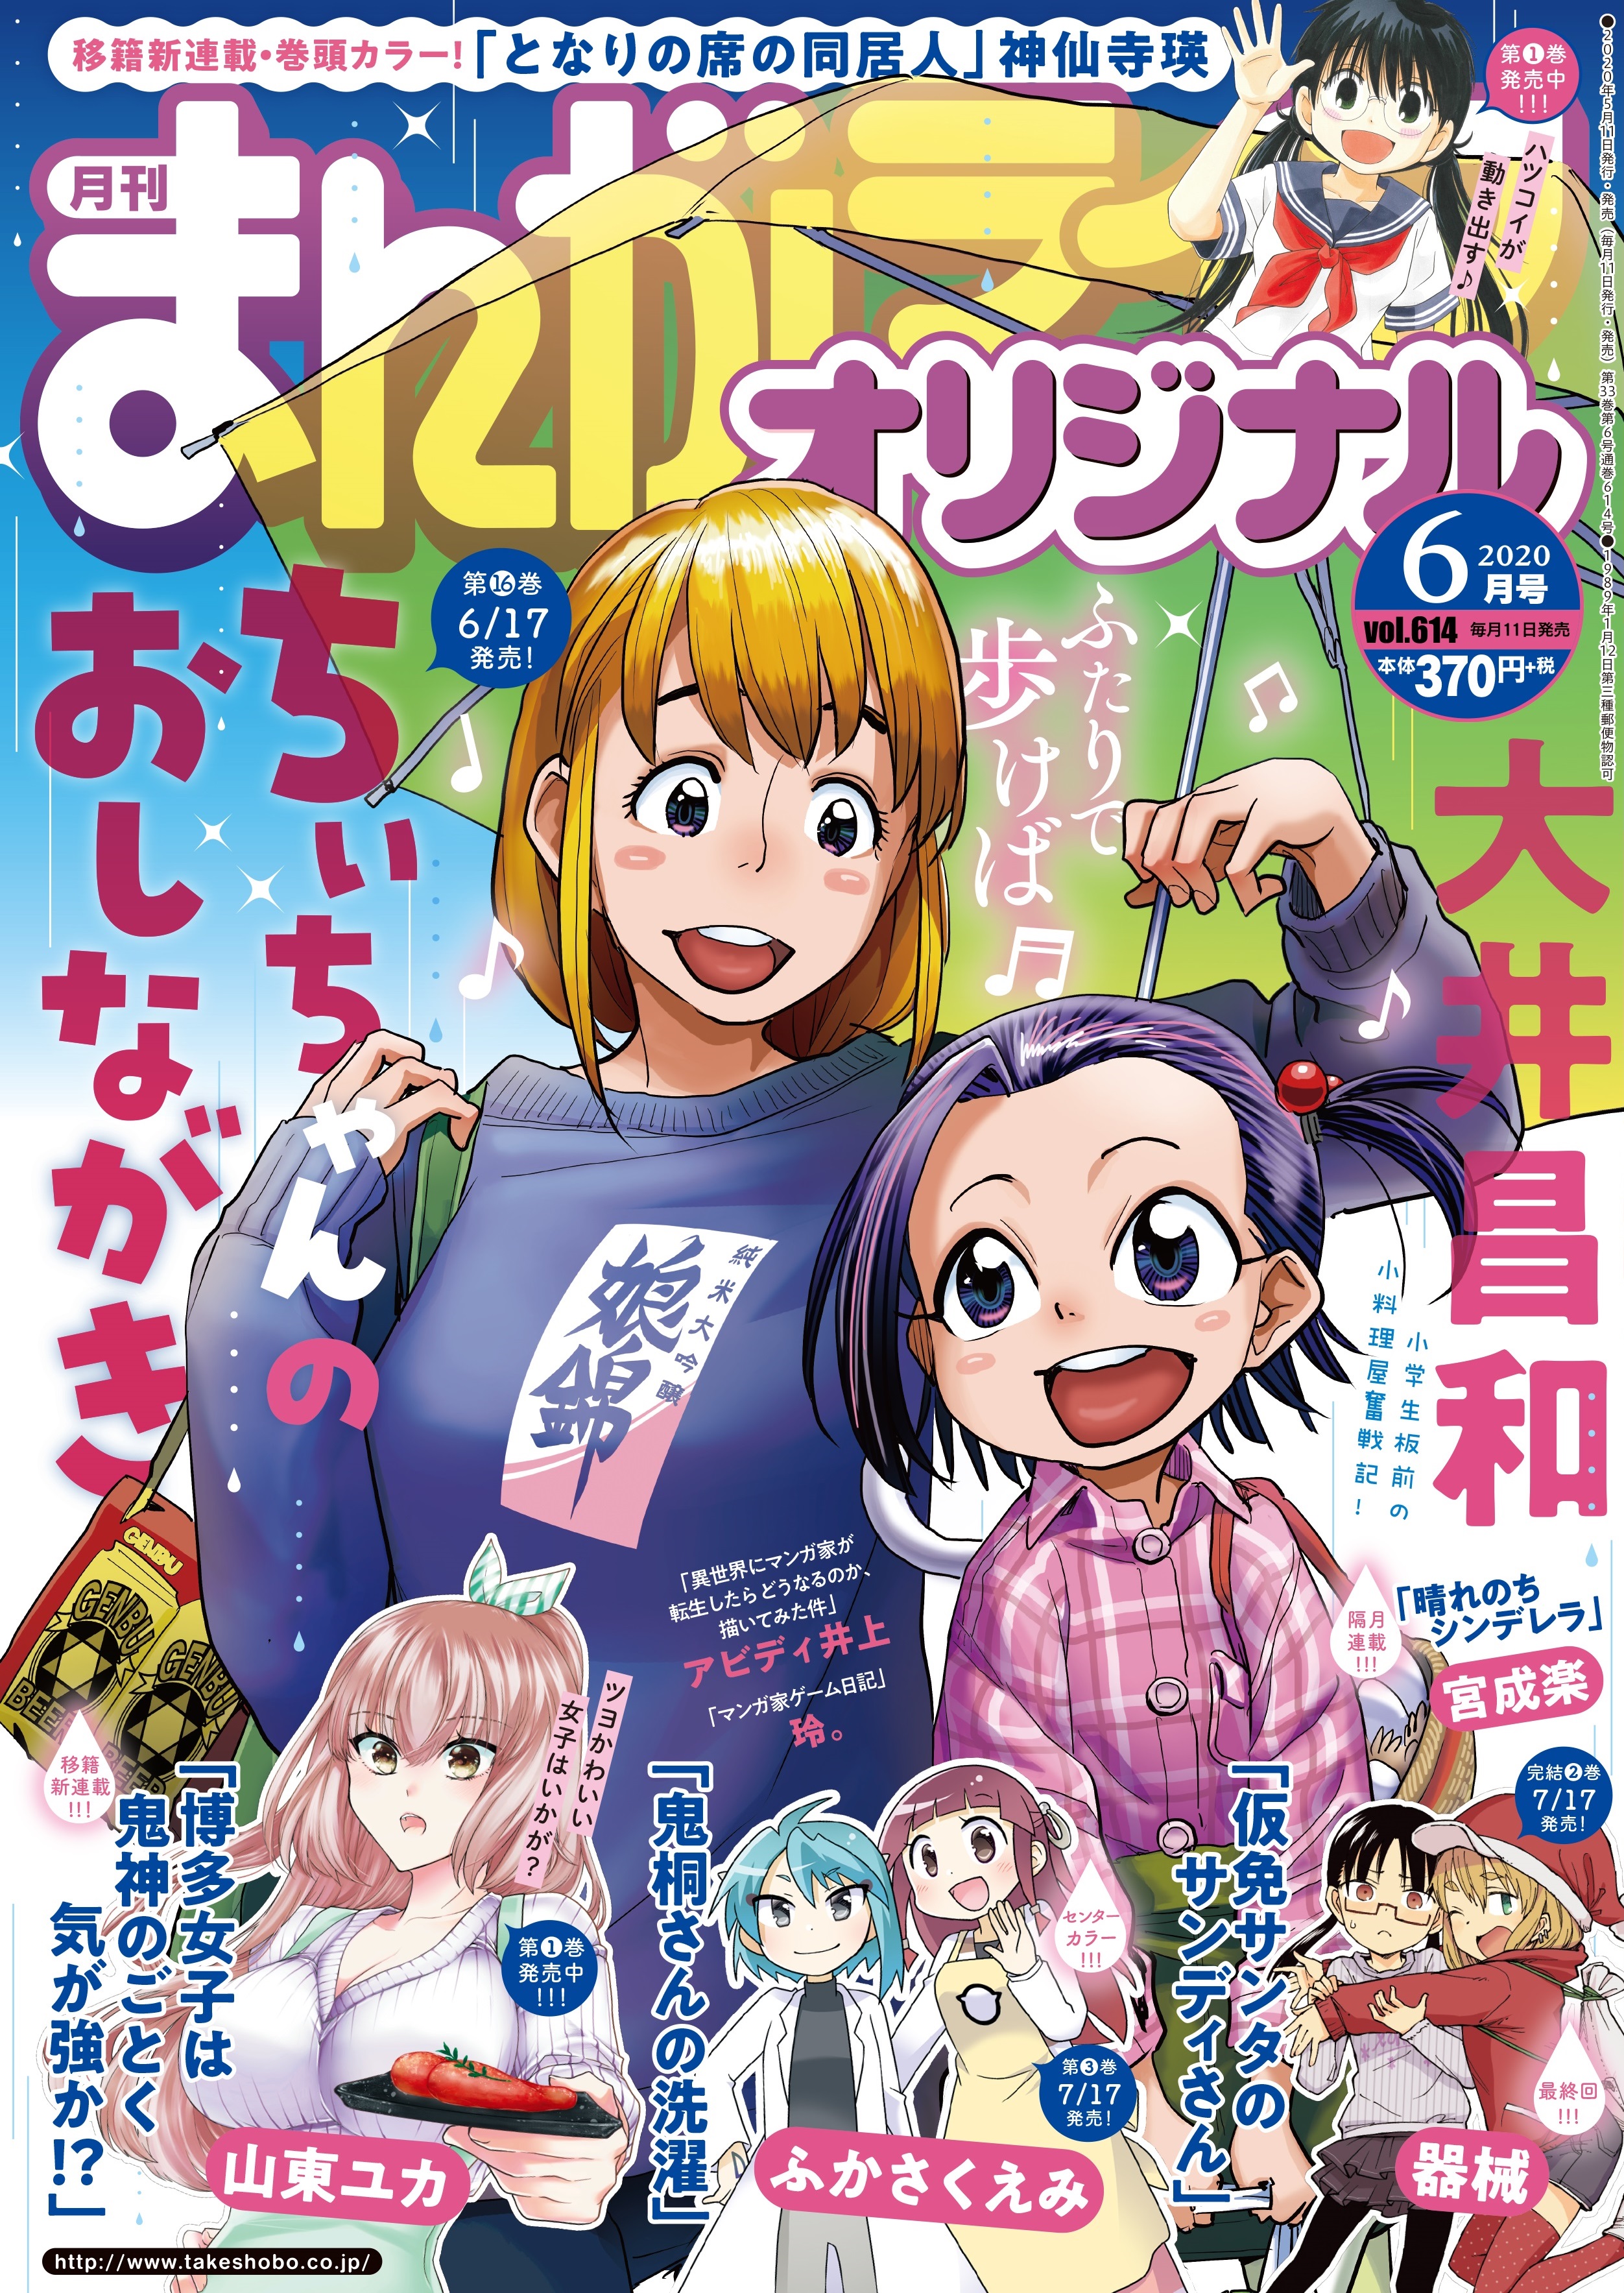 【SÁNG RA XEM BÁO】Bộ sưu tập ảnh bìa tạp chí manga 2020 - Tháng 5 - Shounen/Seinen (Phần 1)